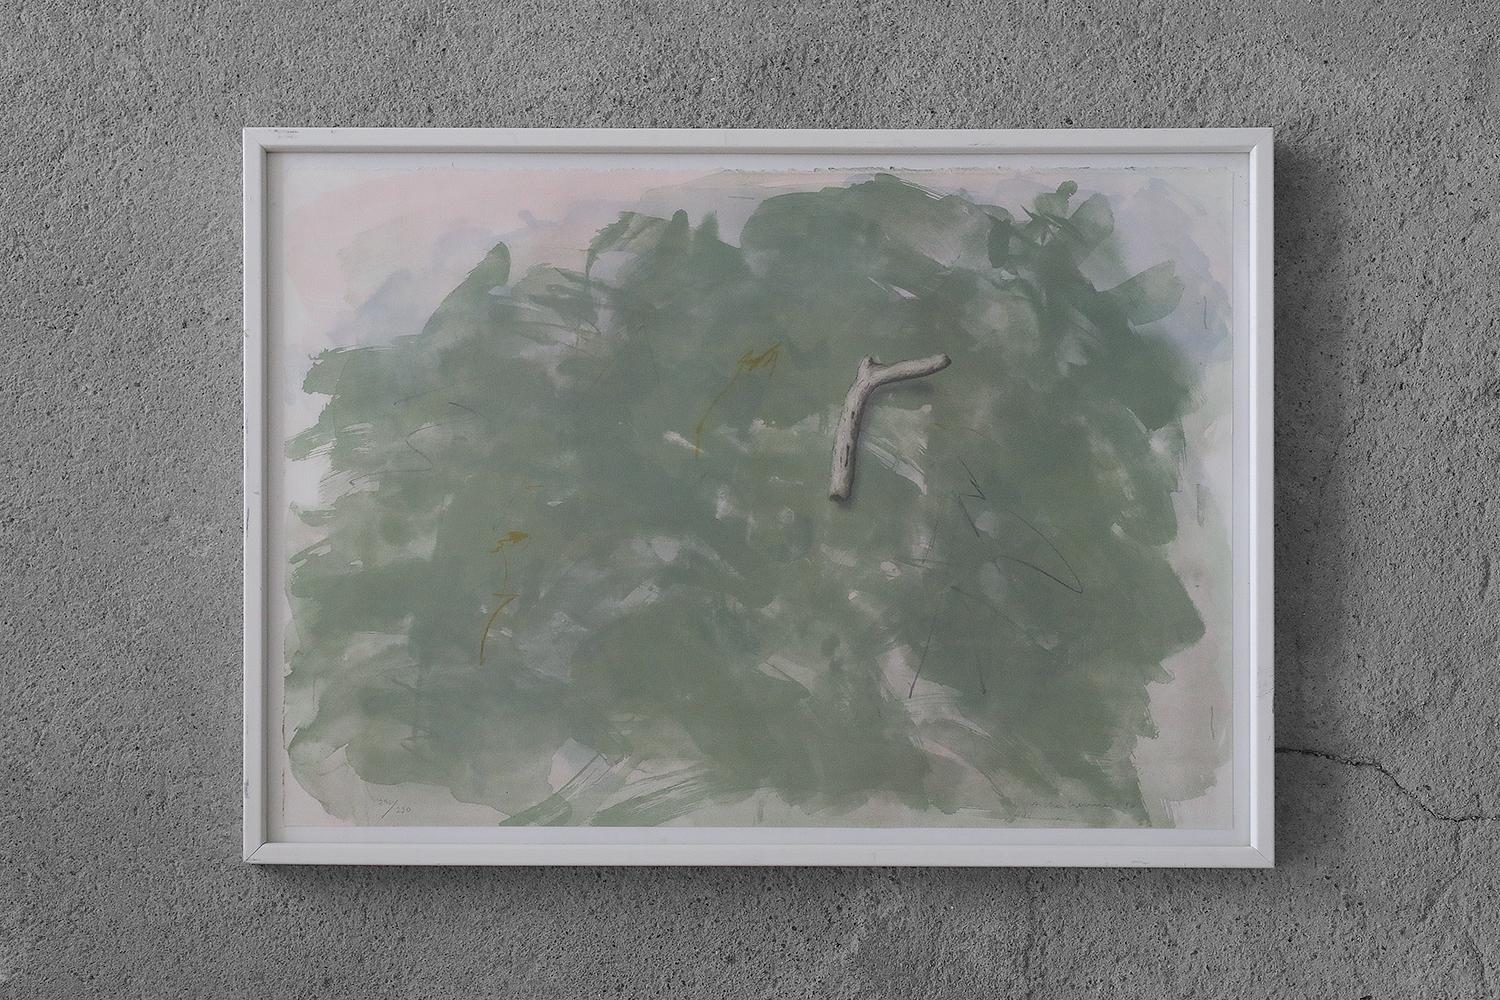 Lennart Aschenbrenner, Composition avec bâton, 1986
Lithographie couleur
Numéro 296/330
Cette œuvre est signée par l'artiste, porte la date et un numéro individuel (au crayon).
Dimensions de la feuille 49/68
Œuvre encadrée

Lennart Aschenbrenner est